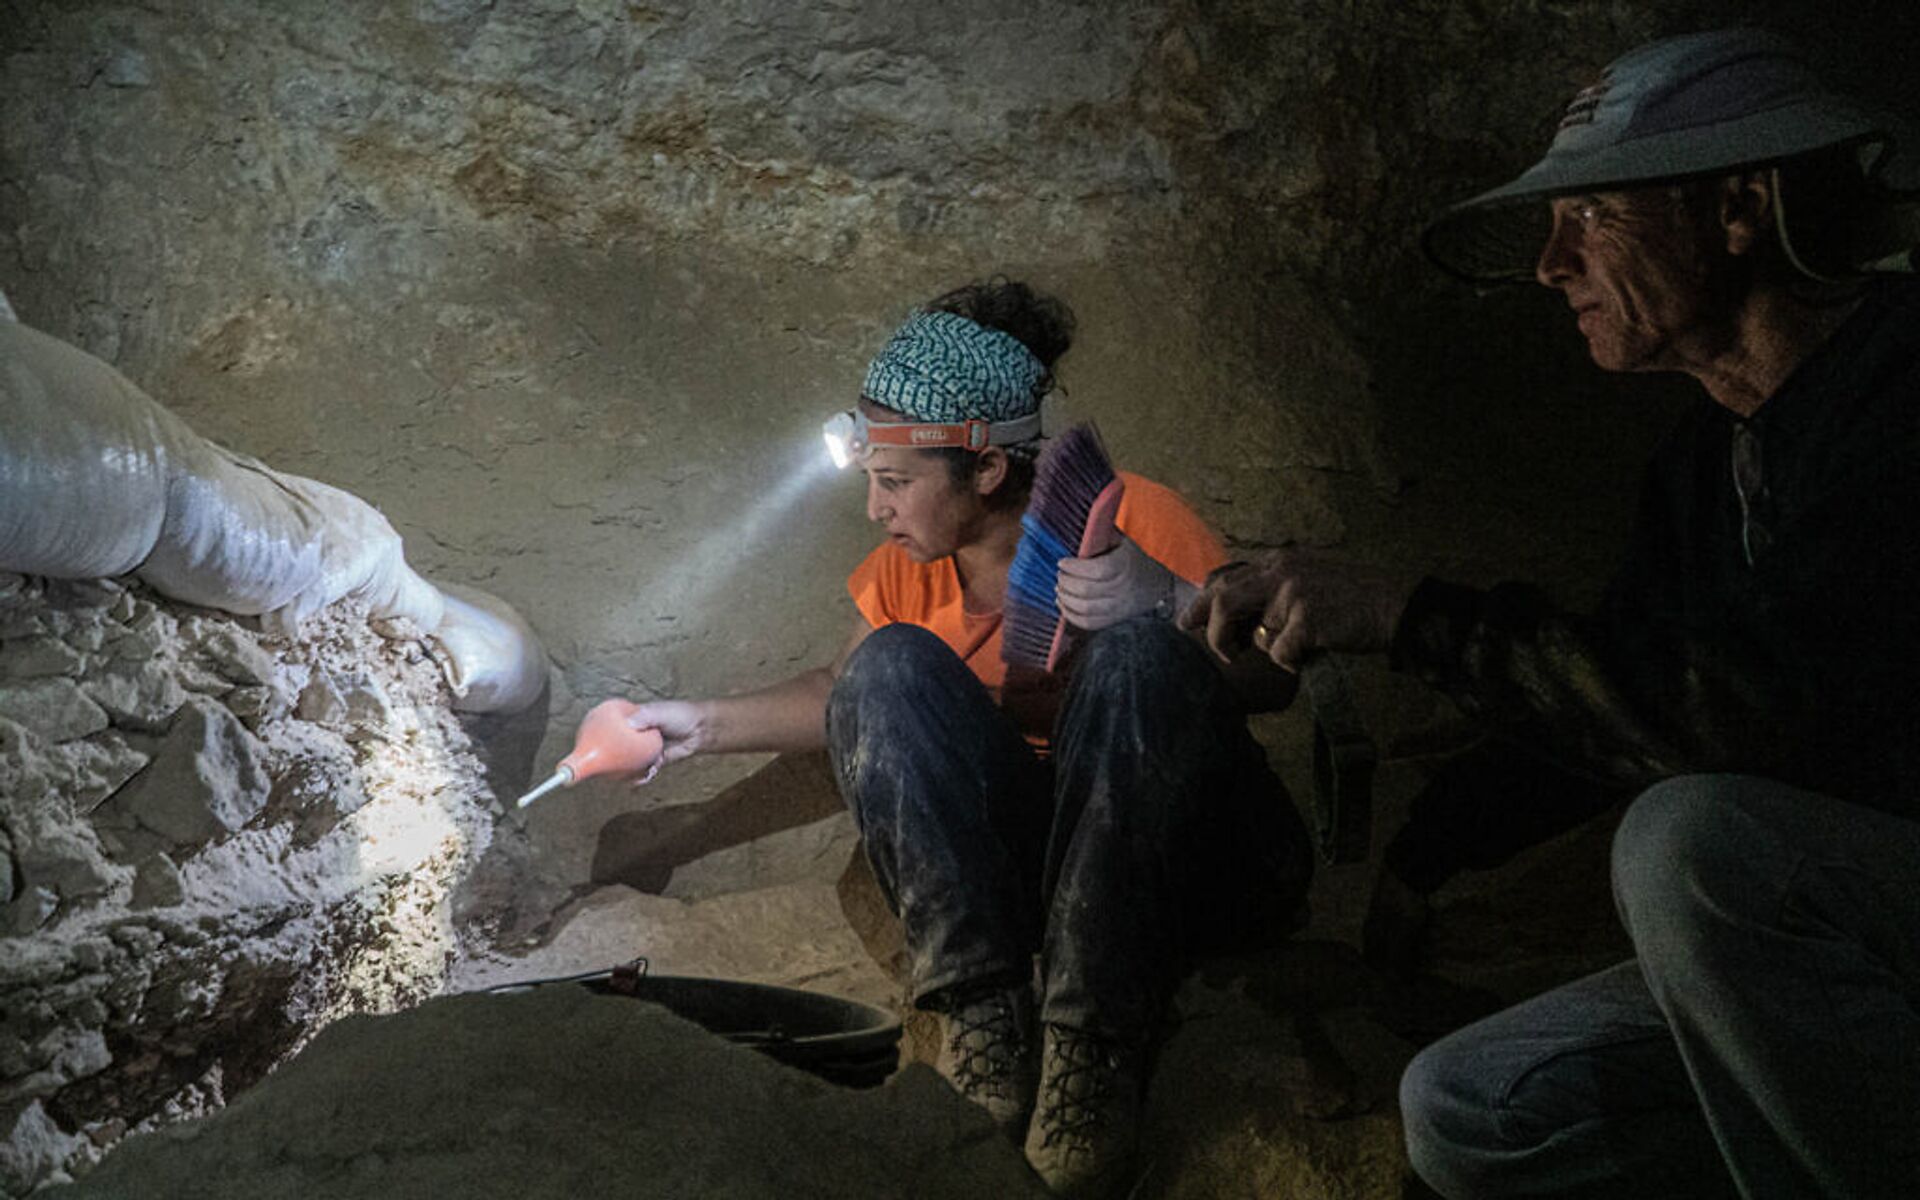 Fragmentos bíblicos e outros tesouros milenares são descobertos em caverna em Israel (VÍDEO, FOTOS) - Sputnik Brasil, 1920, 16.03.2021